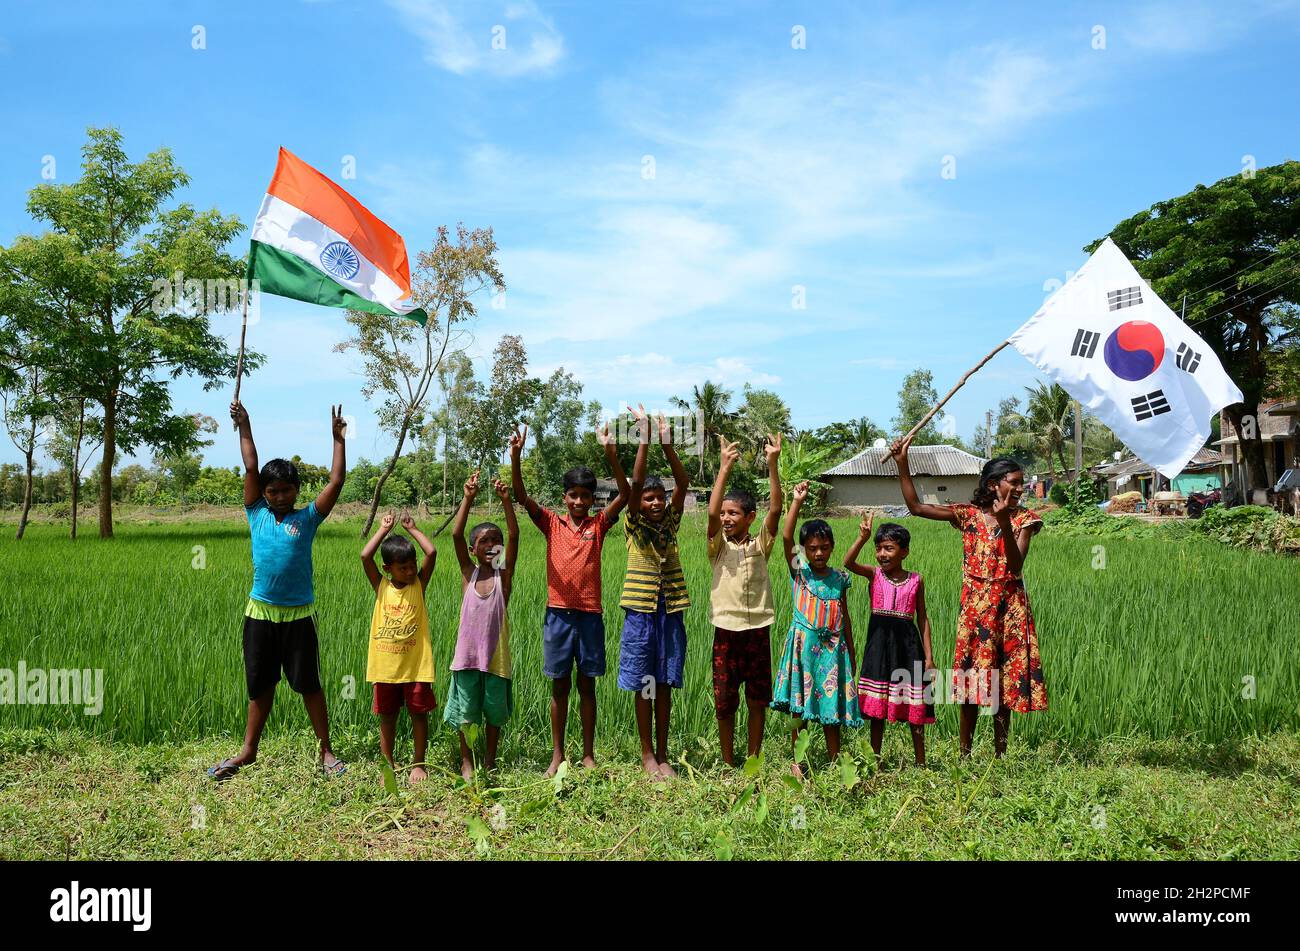 Los niños rurales están albergando una colorida bandera que representa a dos países diferentes bandera simbólica y teniendo un tiempo de diversión juntos en la aldea remota. Foto de stock